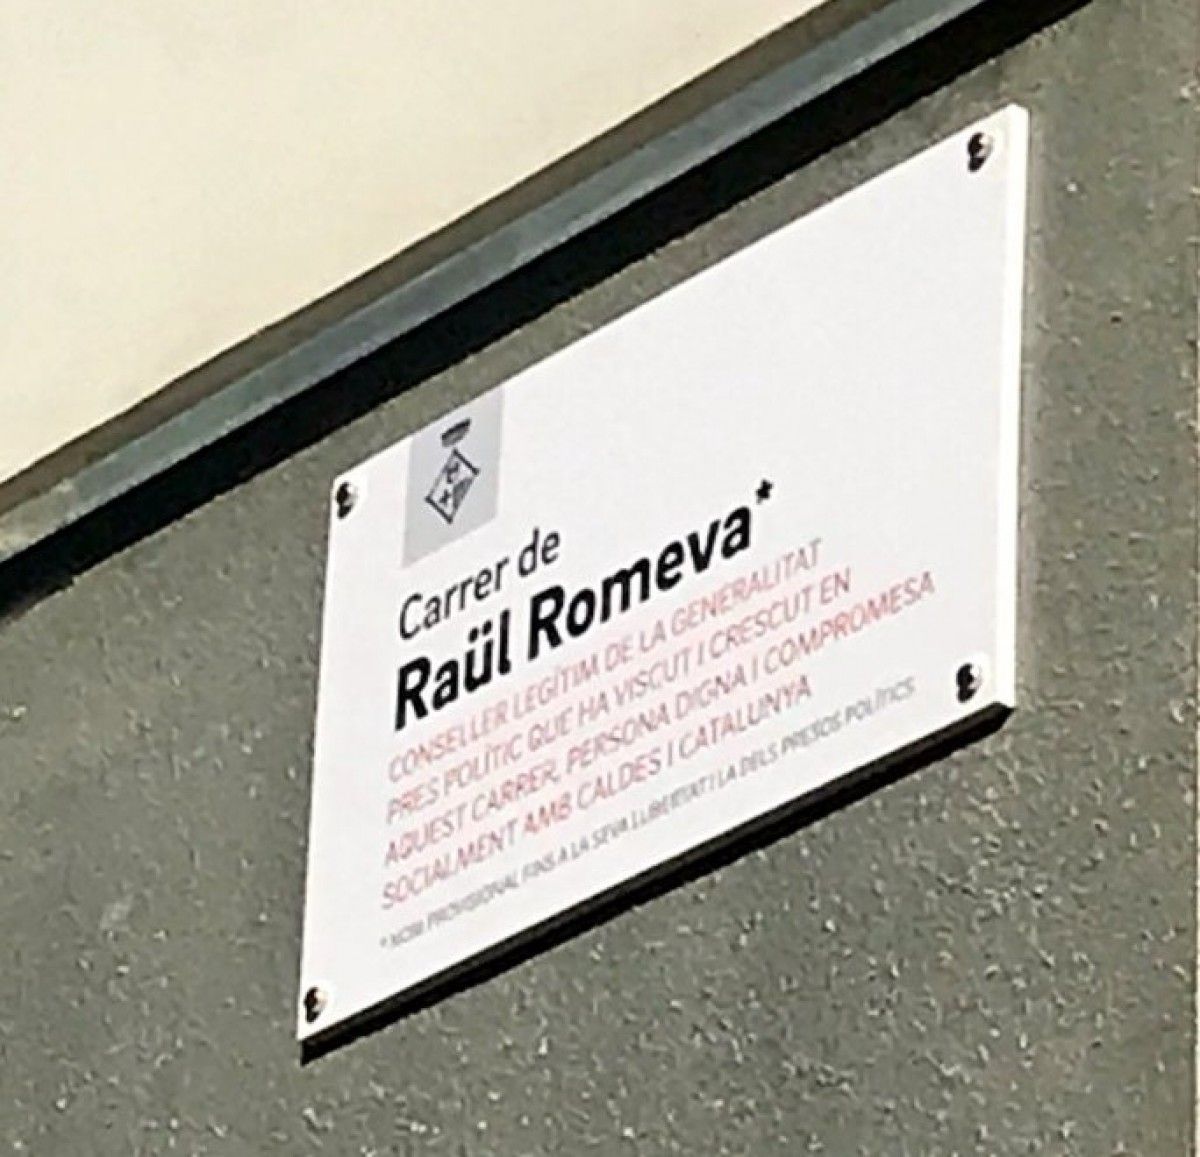 La placa amb el nom de Raül Romeva que s'ha instal·lat a Caldes de Montbui